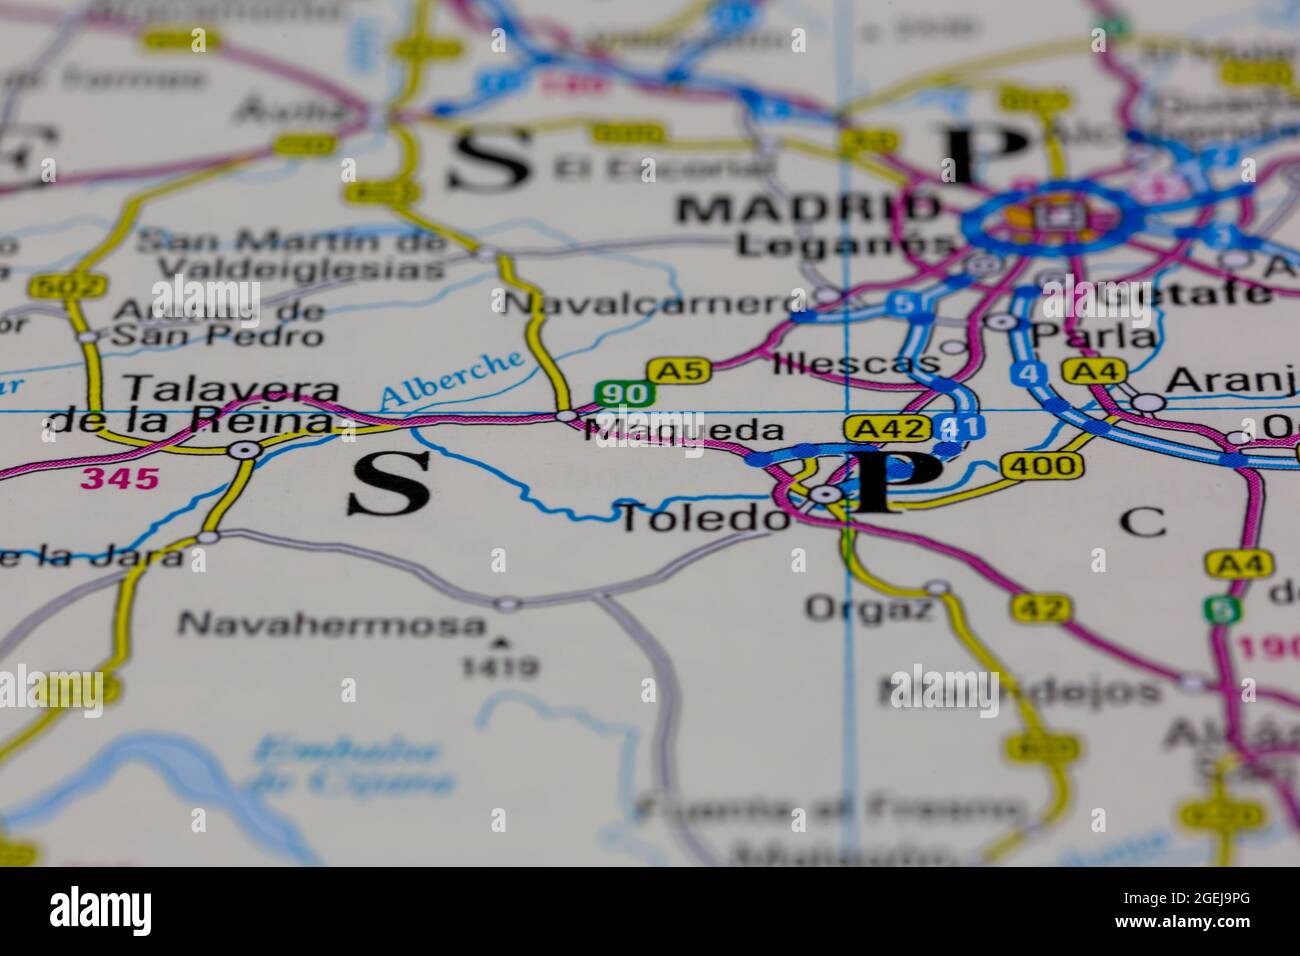 Maqueda España aparece en un mapa de carreteras o en un mapa geográfico Foto de stock